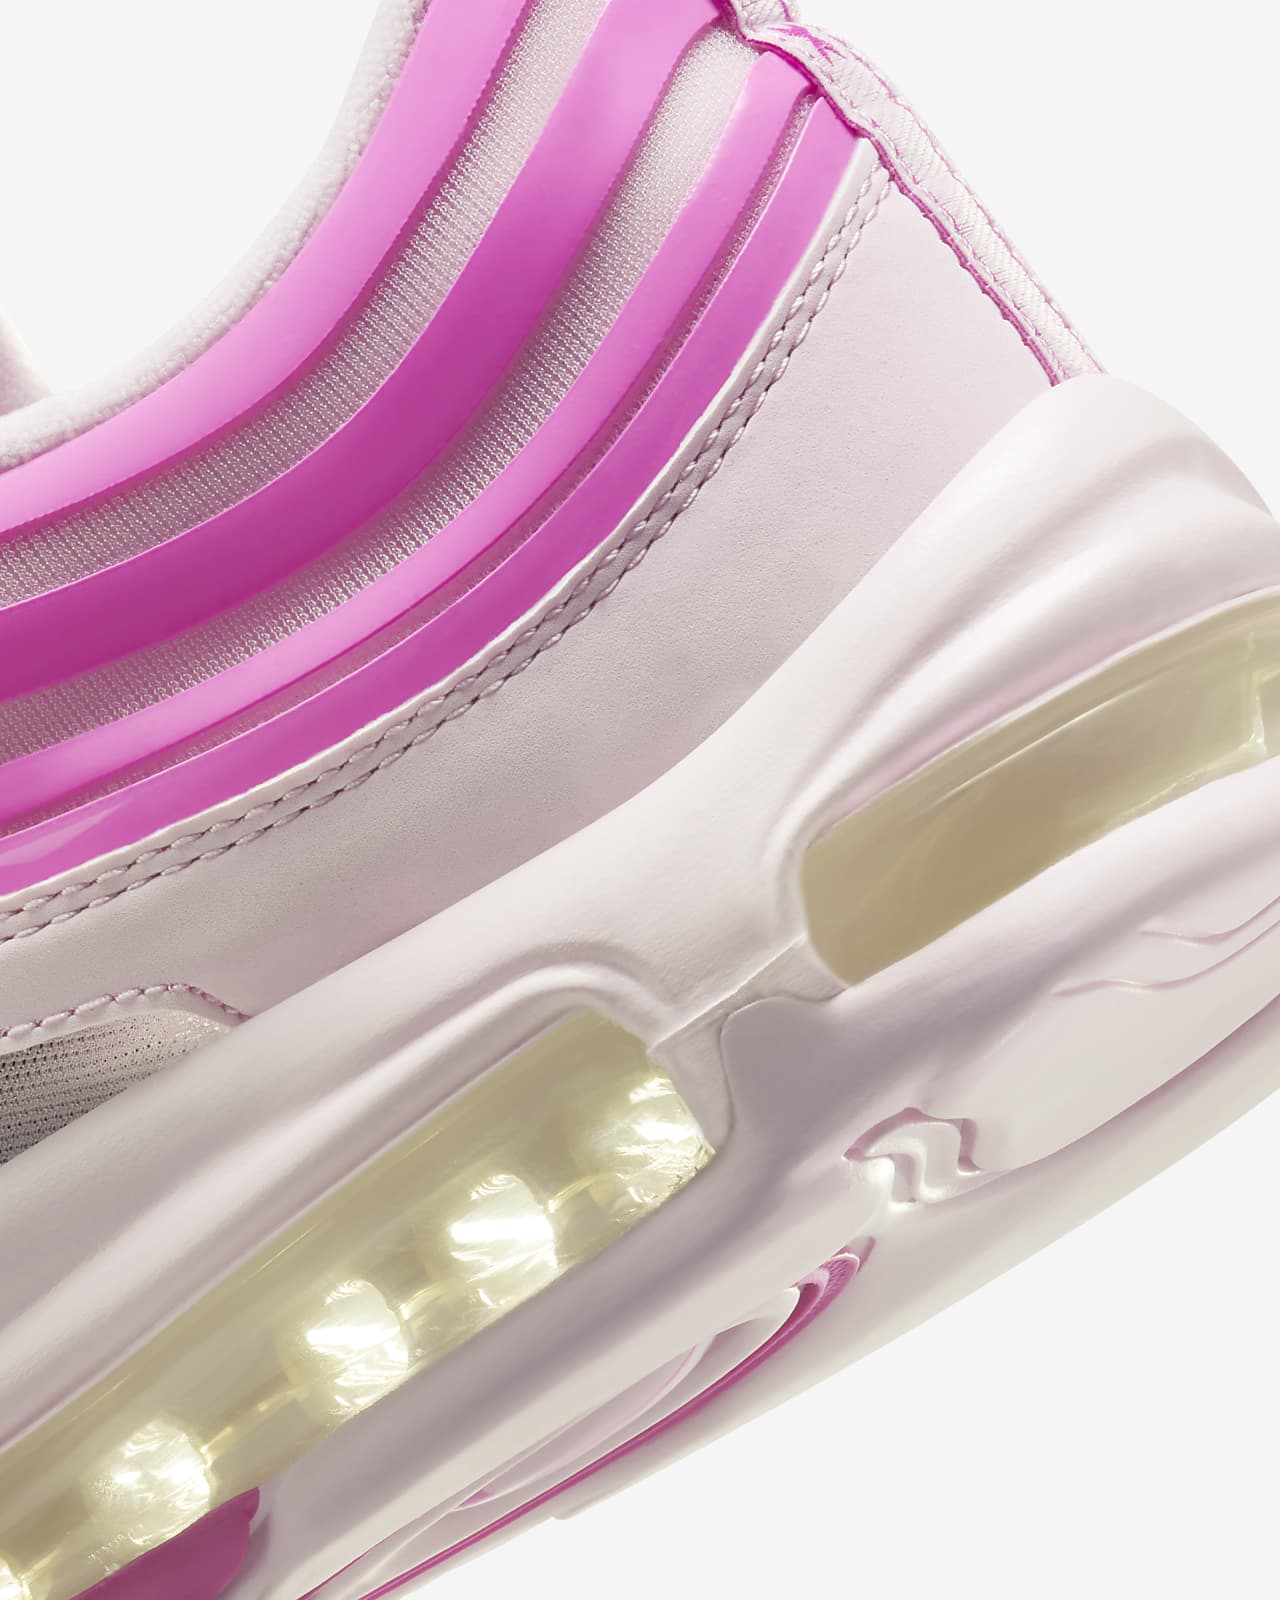 Las zapatillas Air Max 97 de Nike arrasarán en 2023. Palabra de